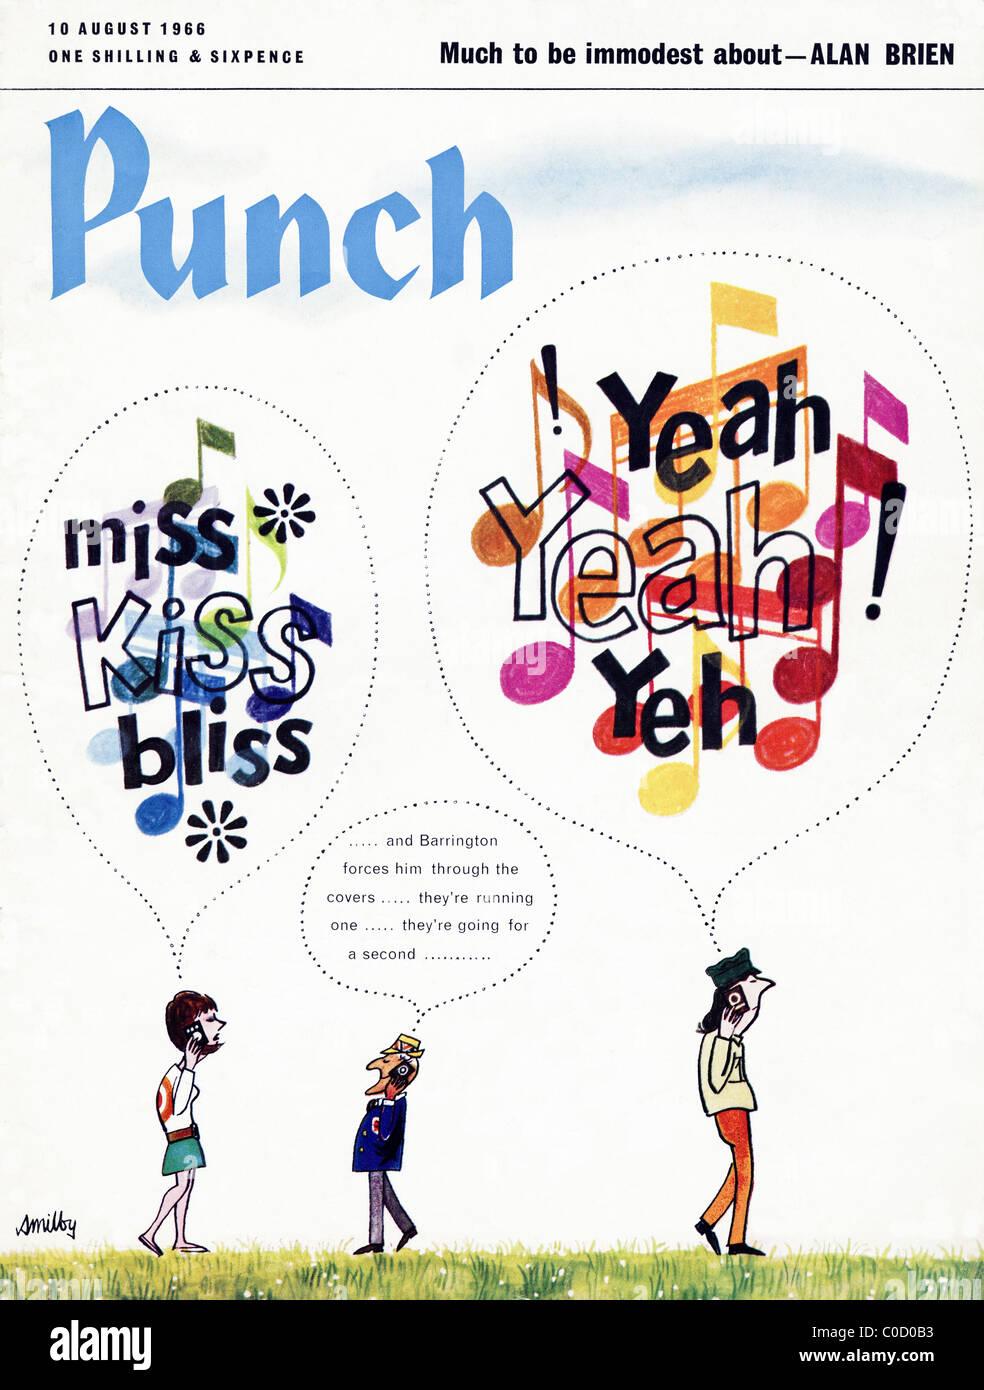 Couverture balançoire des années 60 du magazine Punch 10 août 1966 Banque D'Images